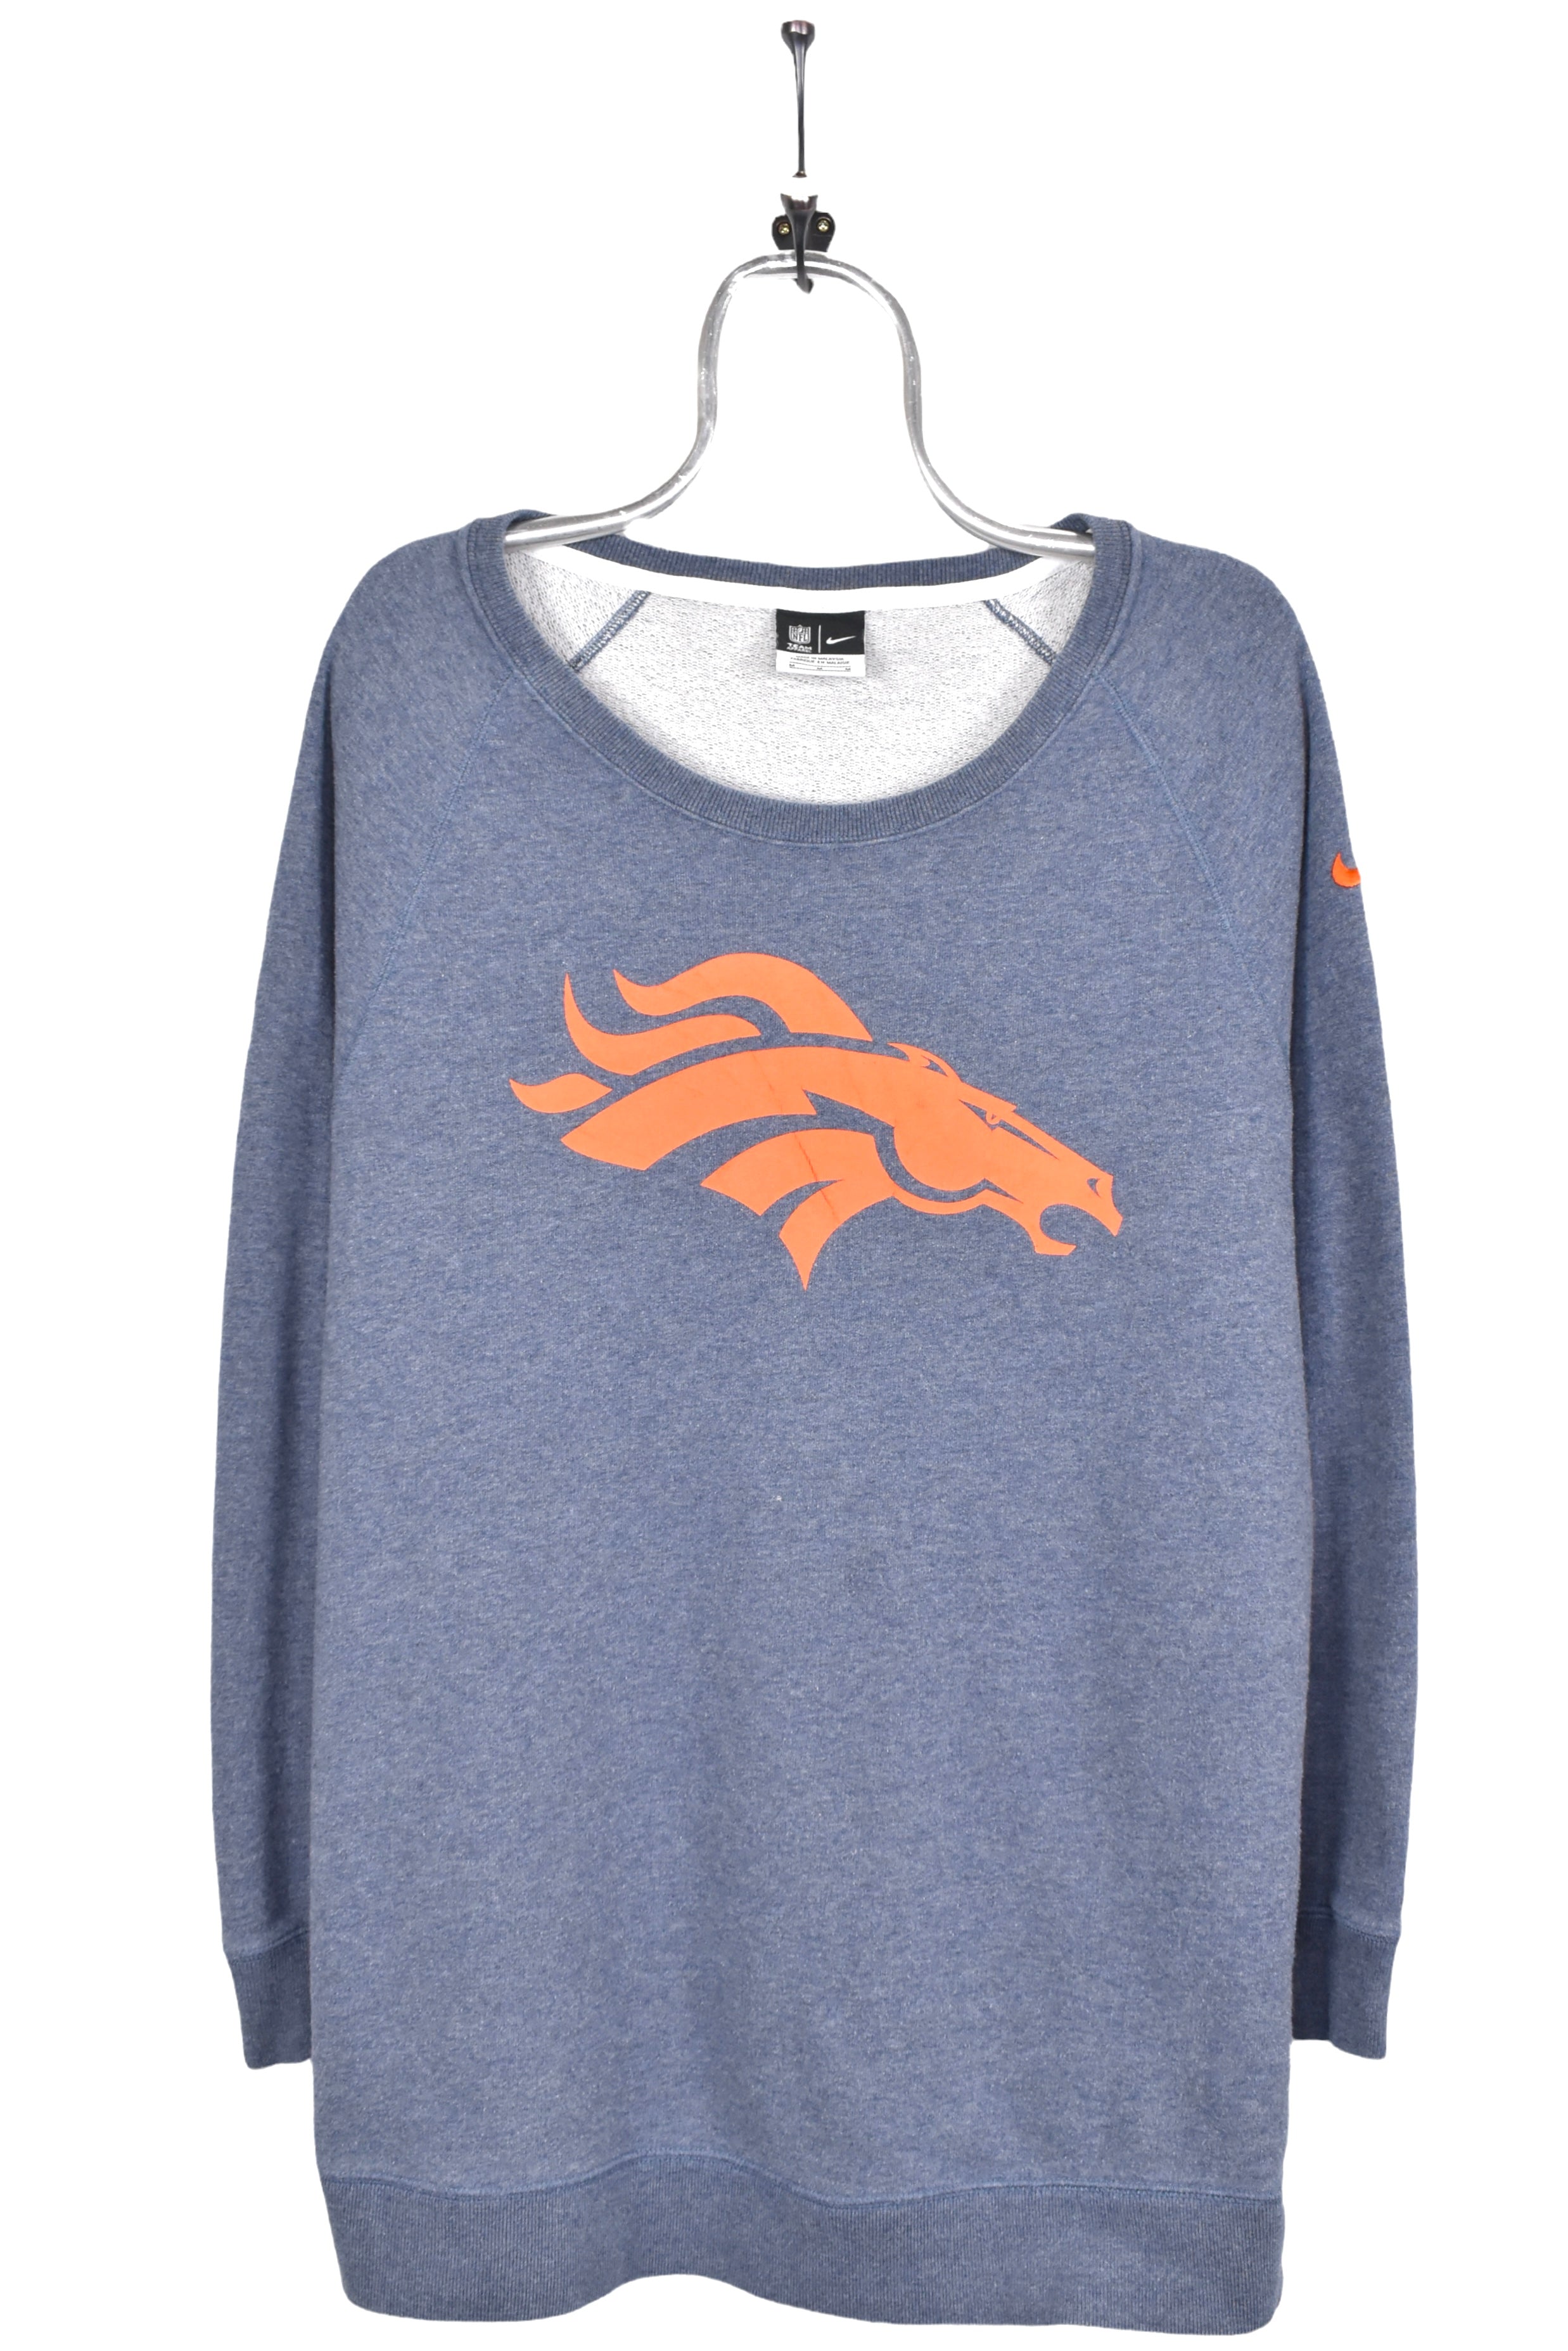 Women's vintage Denver Broncos sweatshirt, NFL grey graphic crewneck - AU Large PRO SPORT